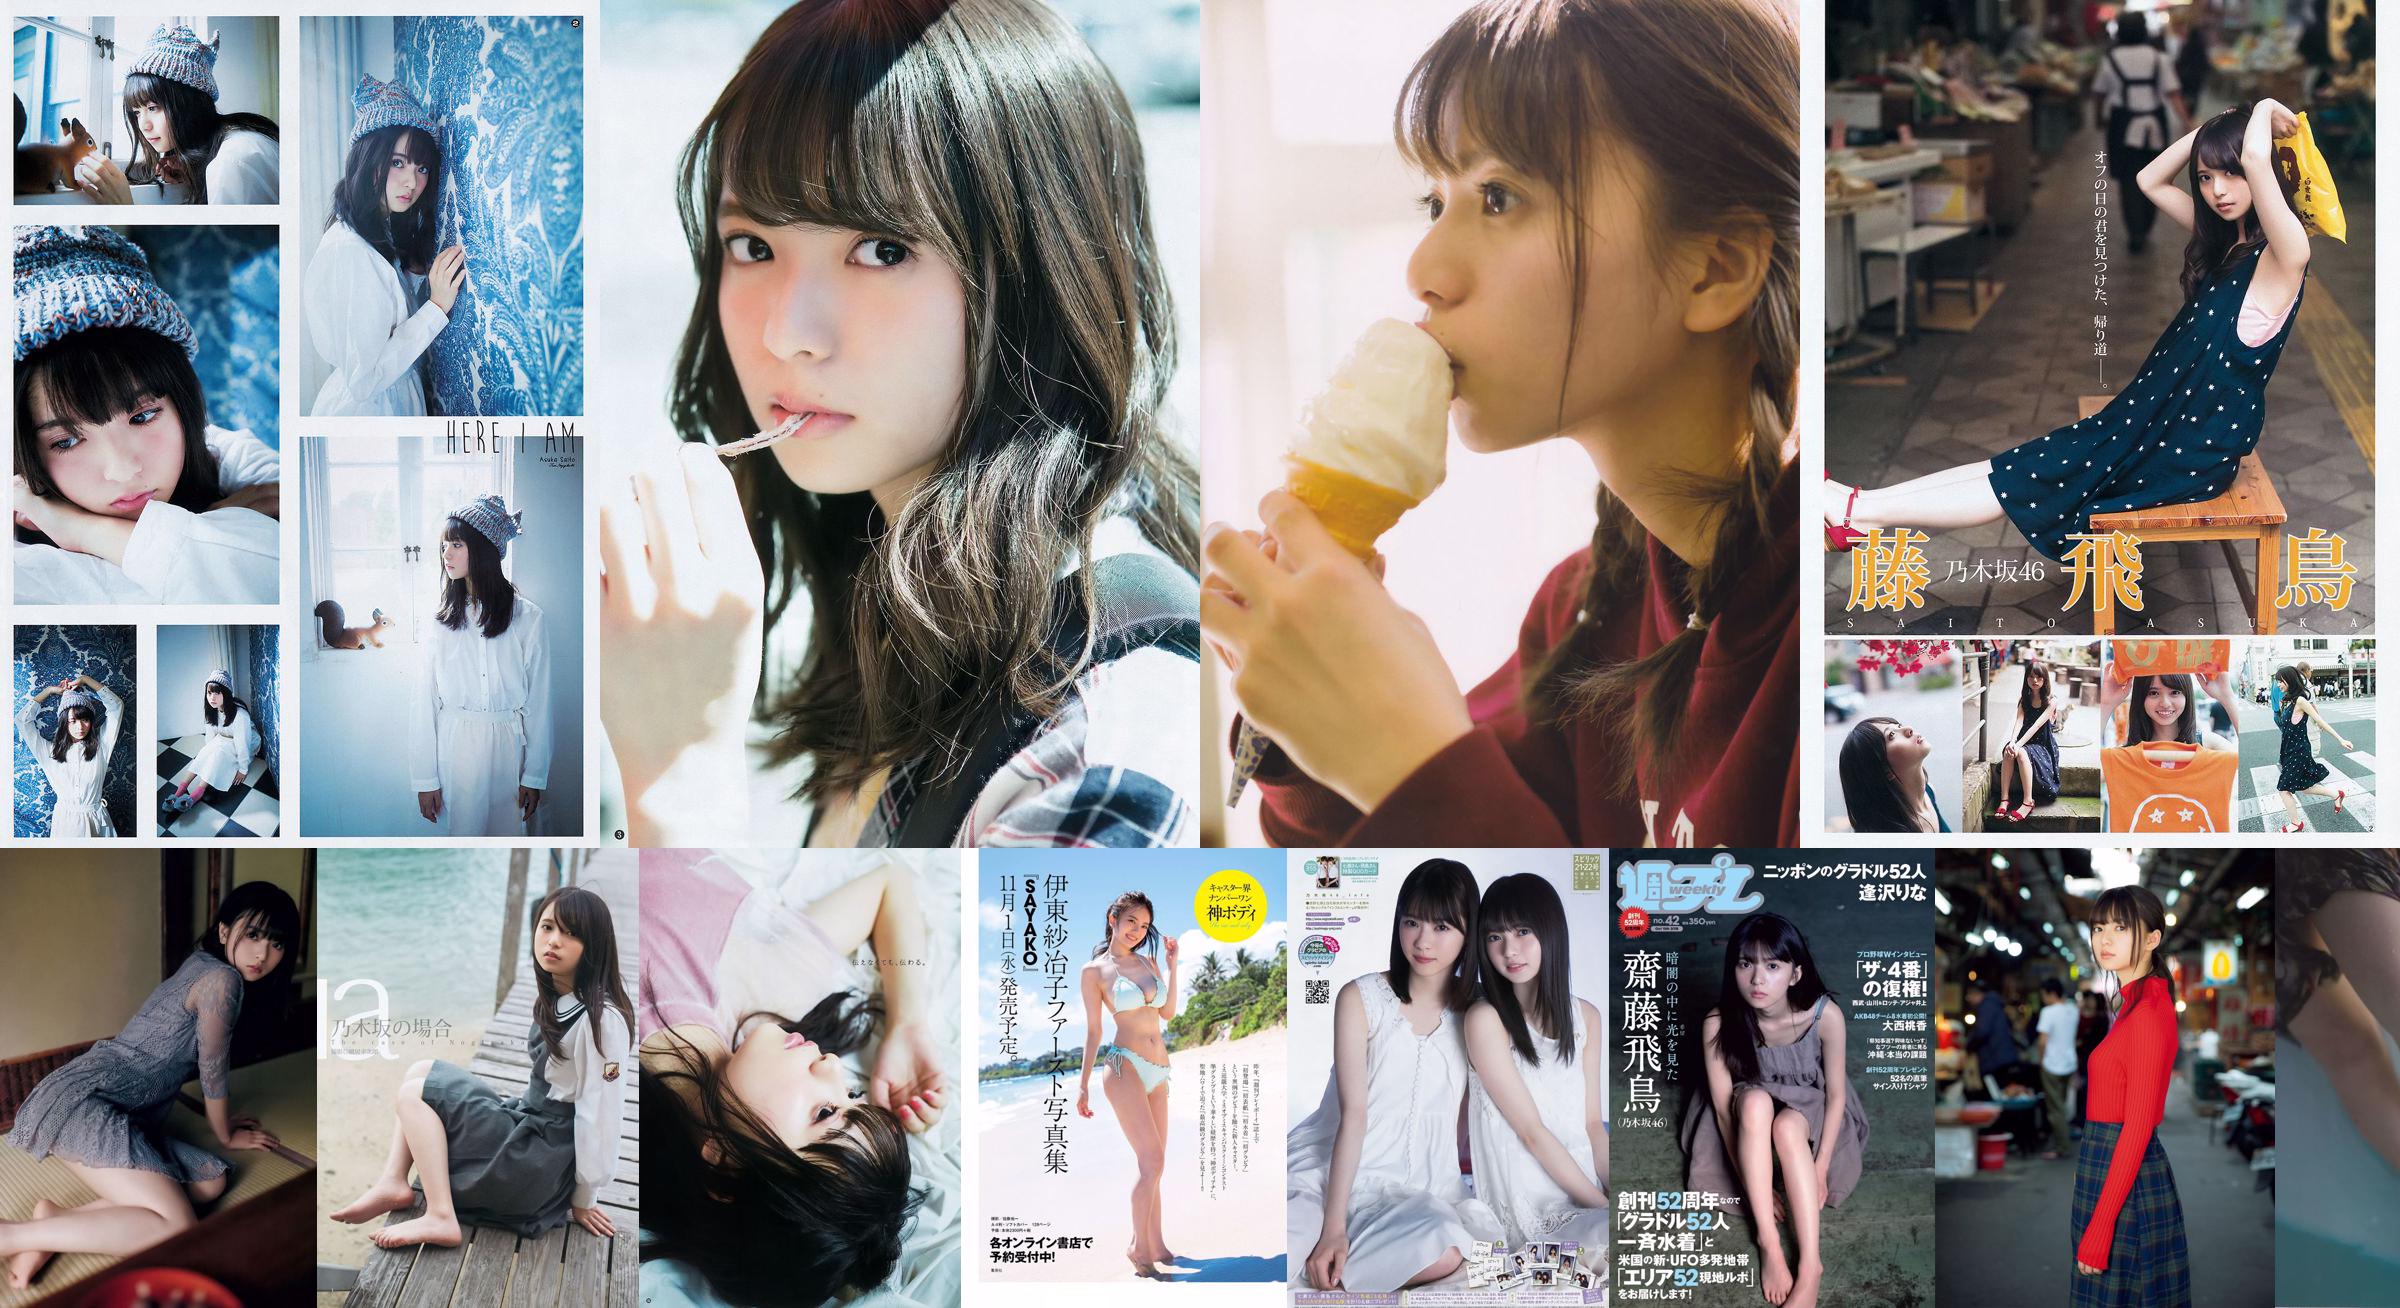 Asuka Saito Chika Yuki [Weekly Young Jump] 2015 No.28 Photo Magazine No.281af6 หน้า 1